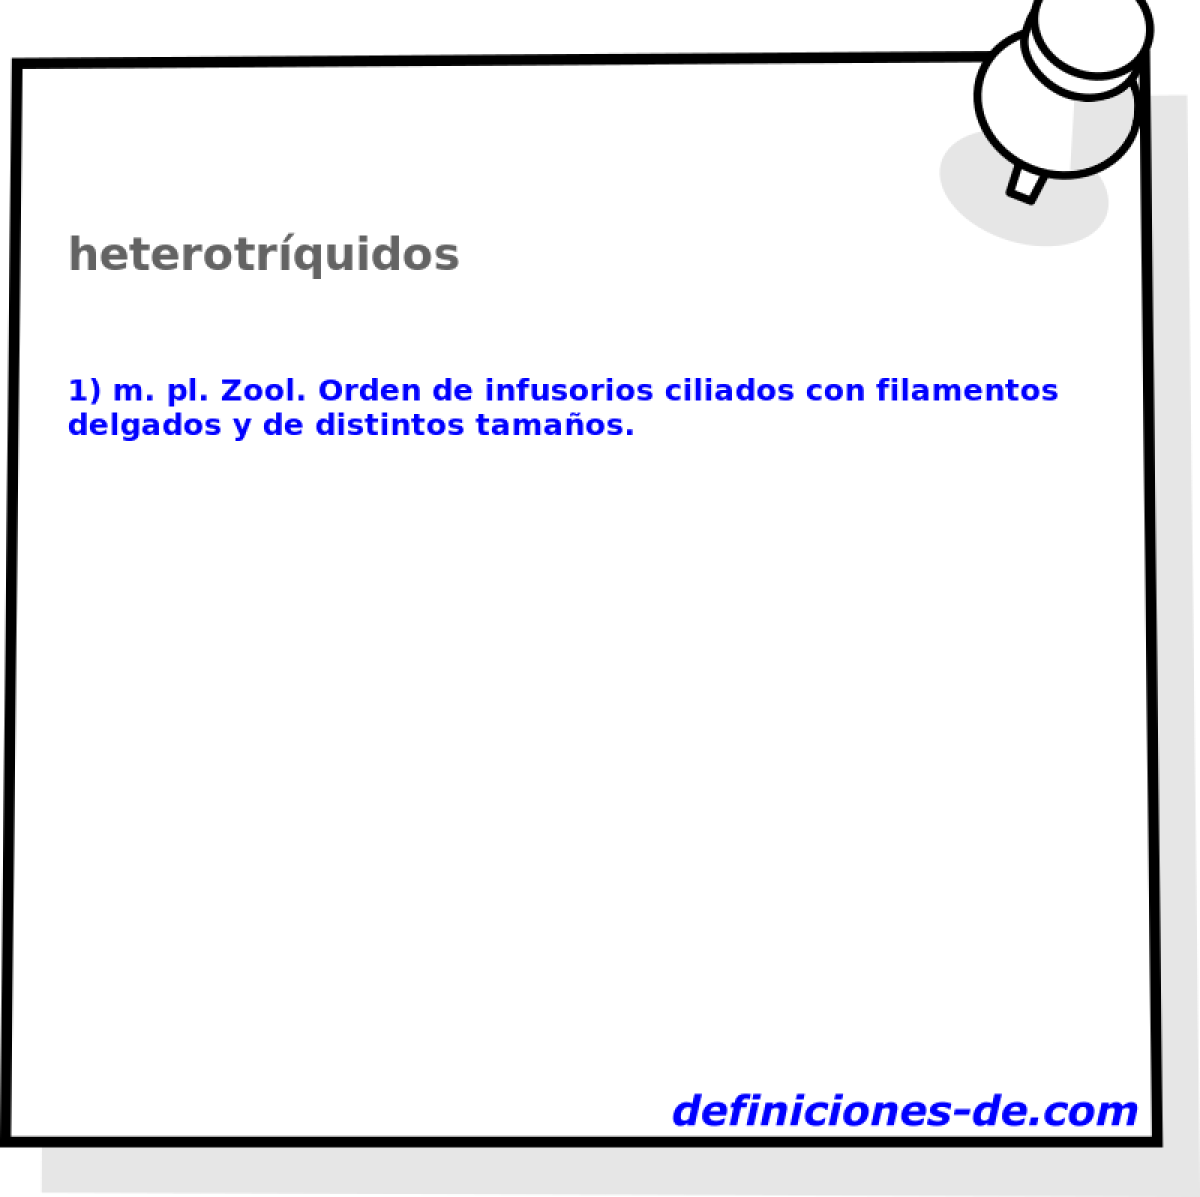 heterotrquidos 